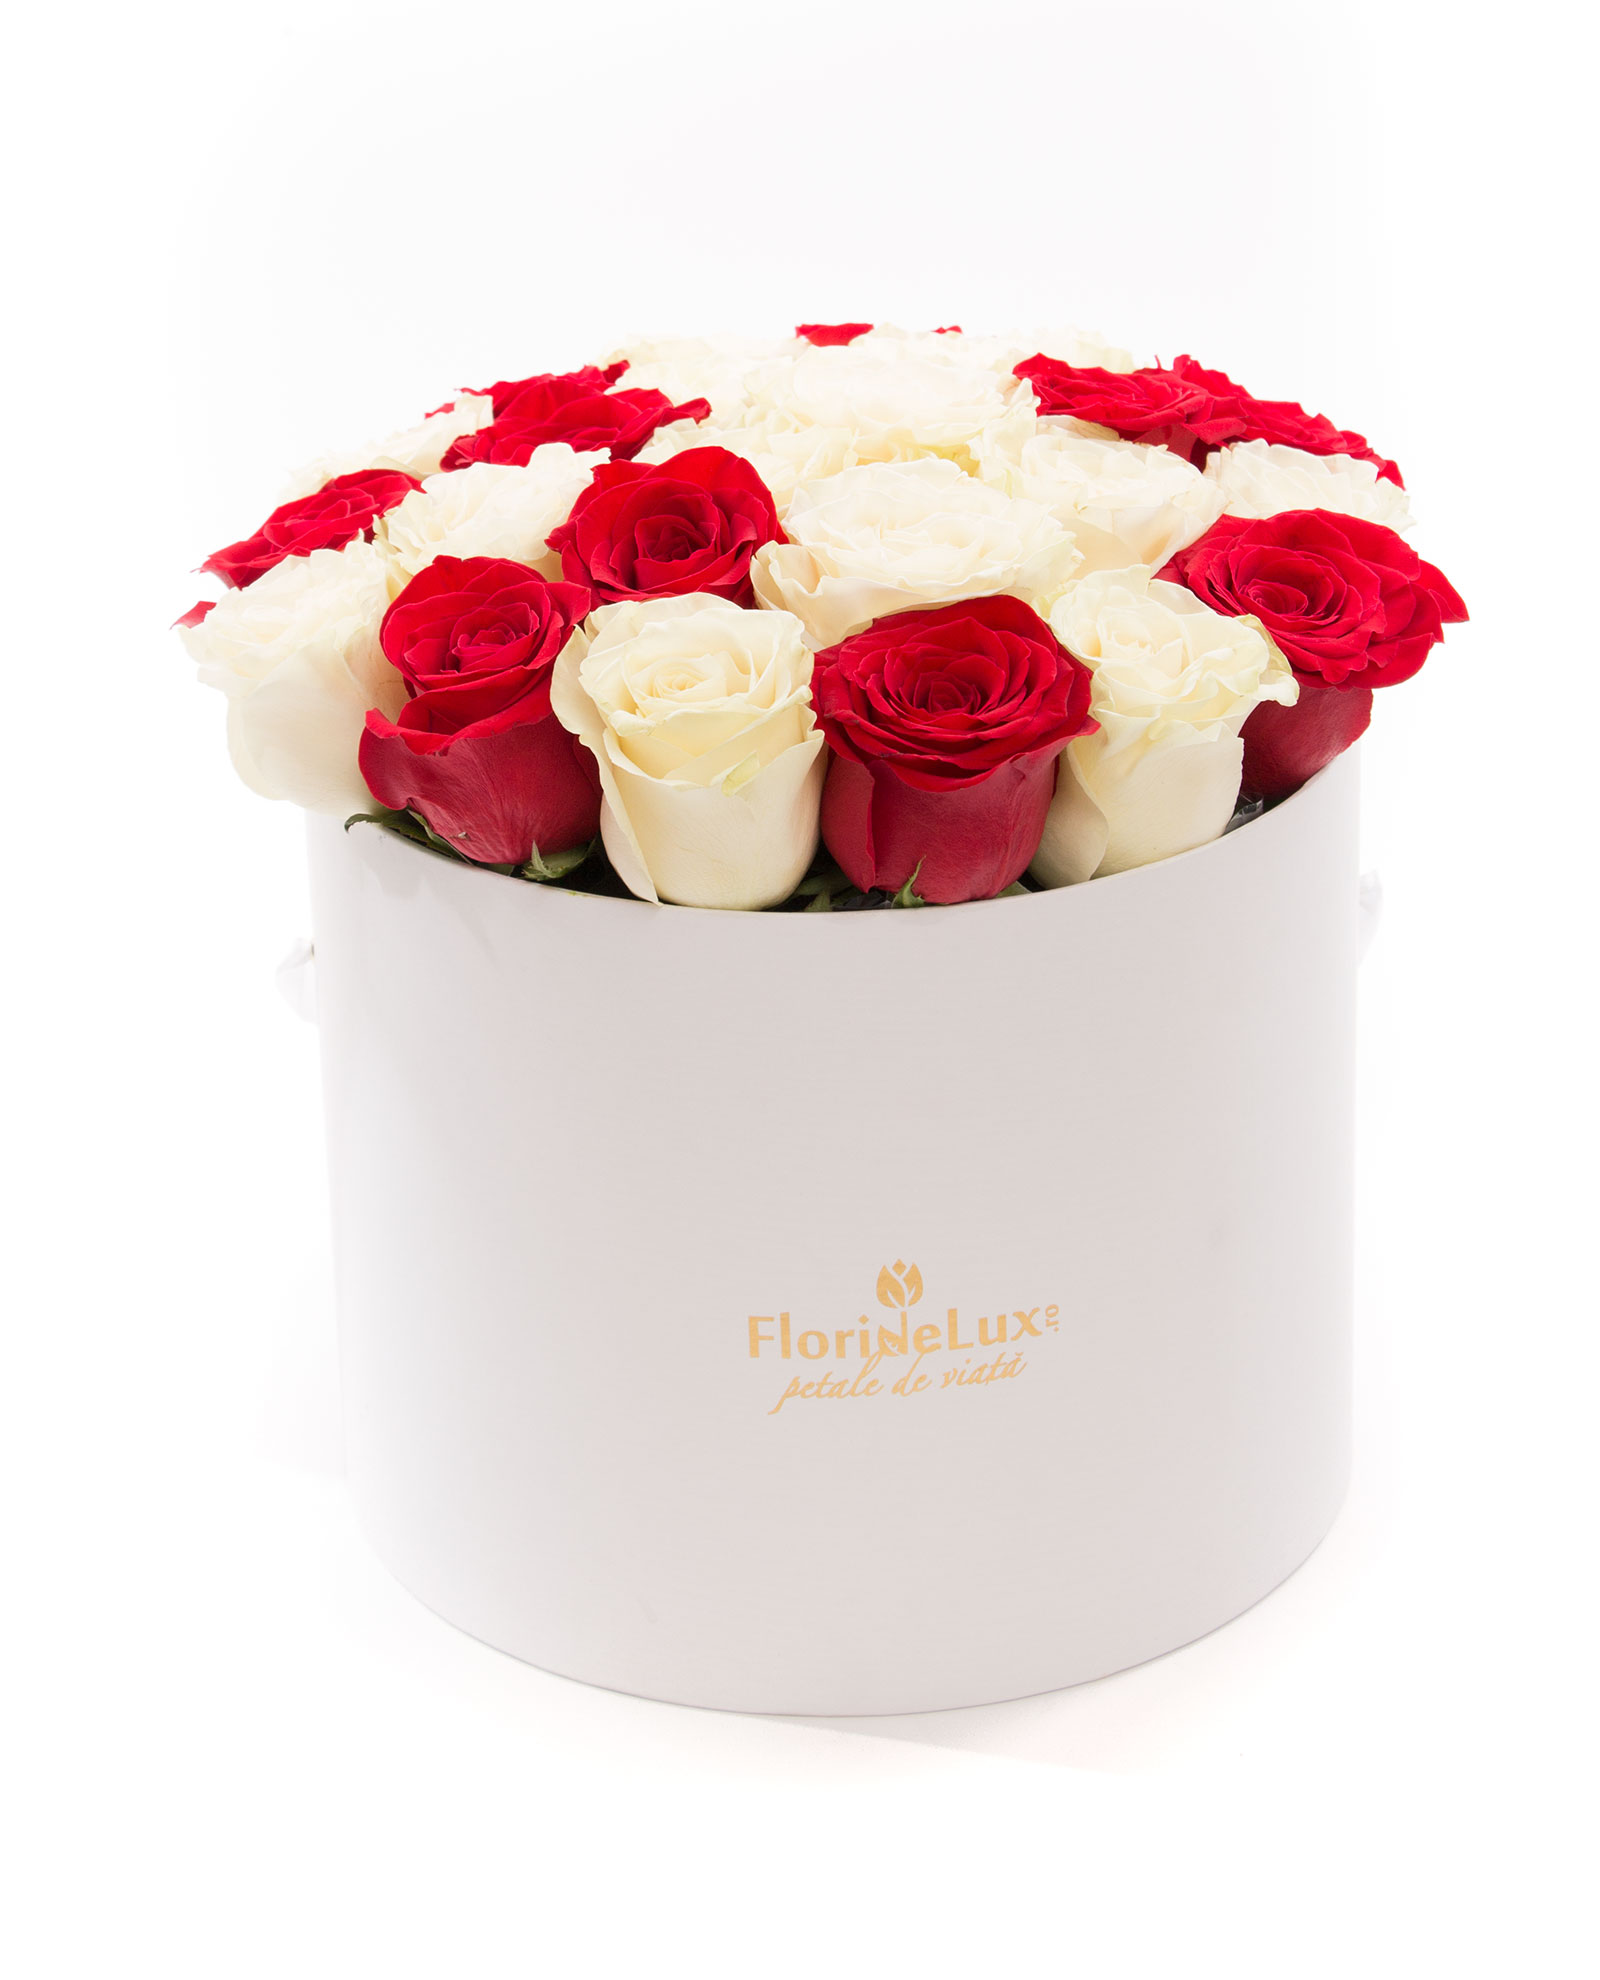 Cutie cu 23 trandafiri albi, rosii si Bollinger Rose